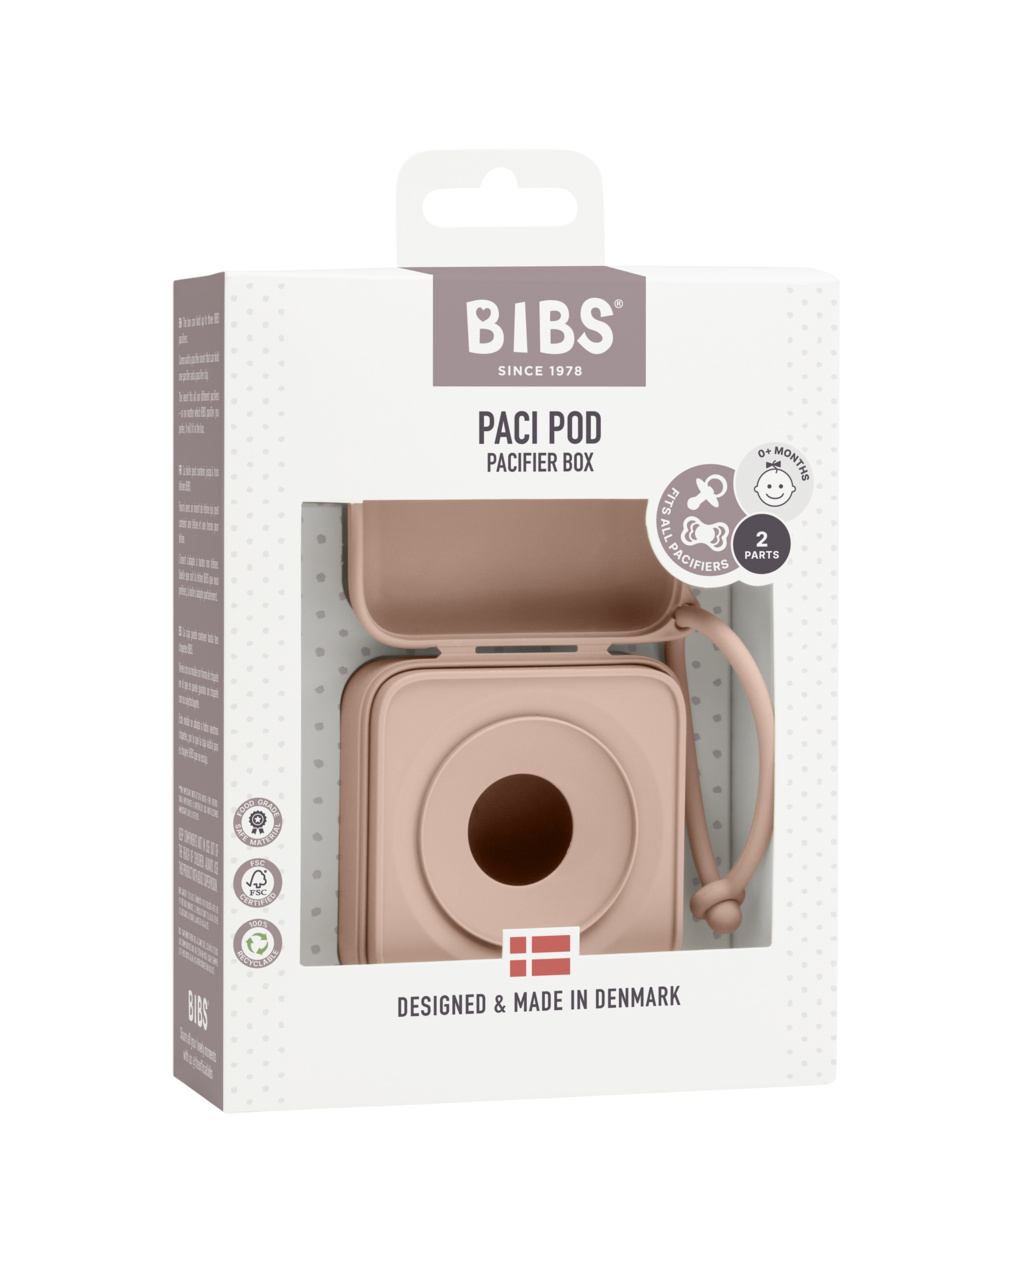 Portachupetes rosa - bibs - BIBS